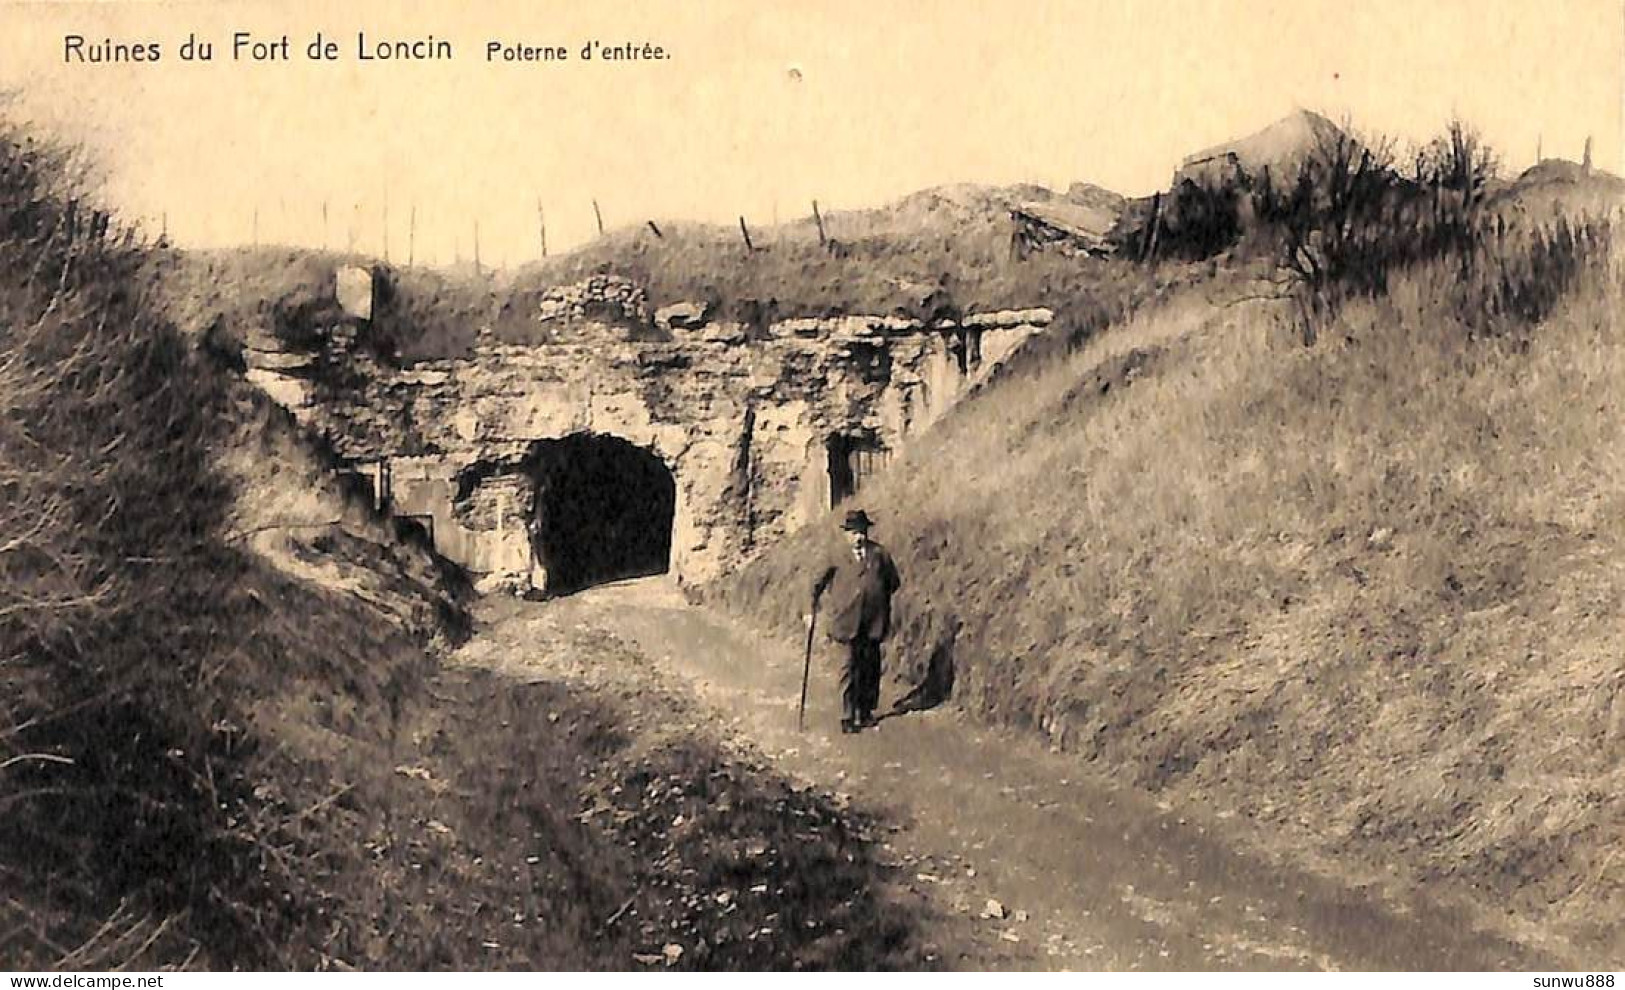 Ruines Du Fort De Loncin - Poterne D'entrée (trou De Punaise) - Liege